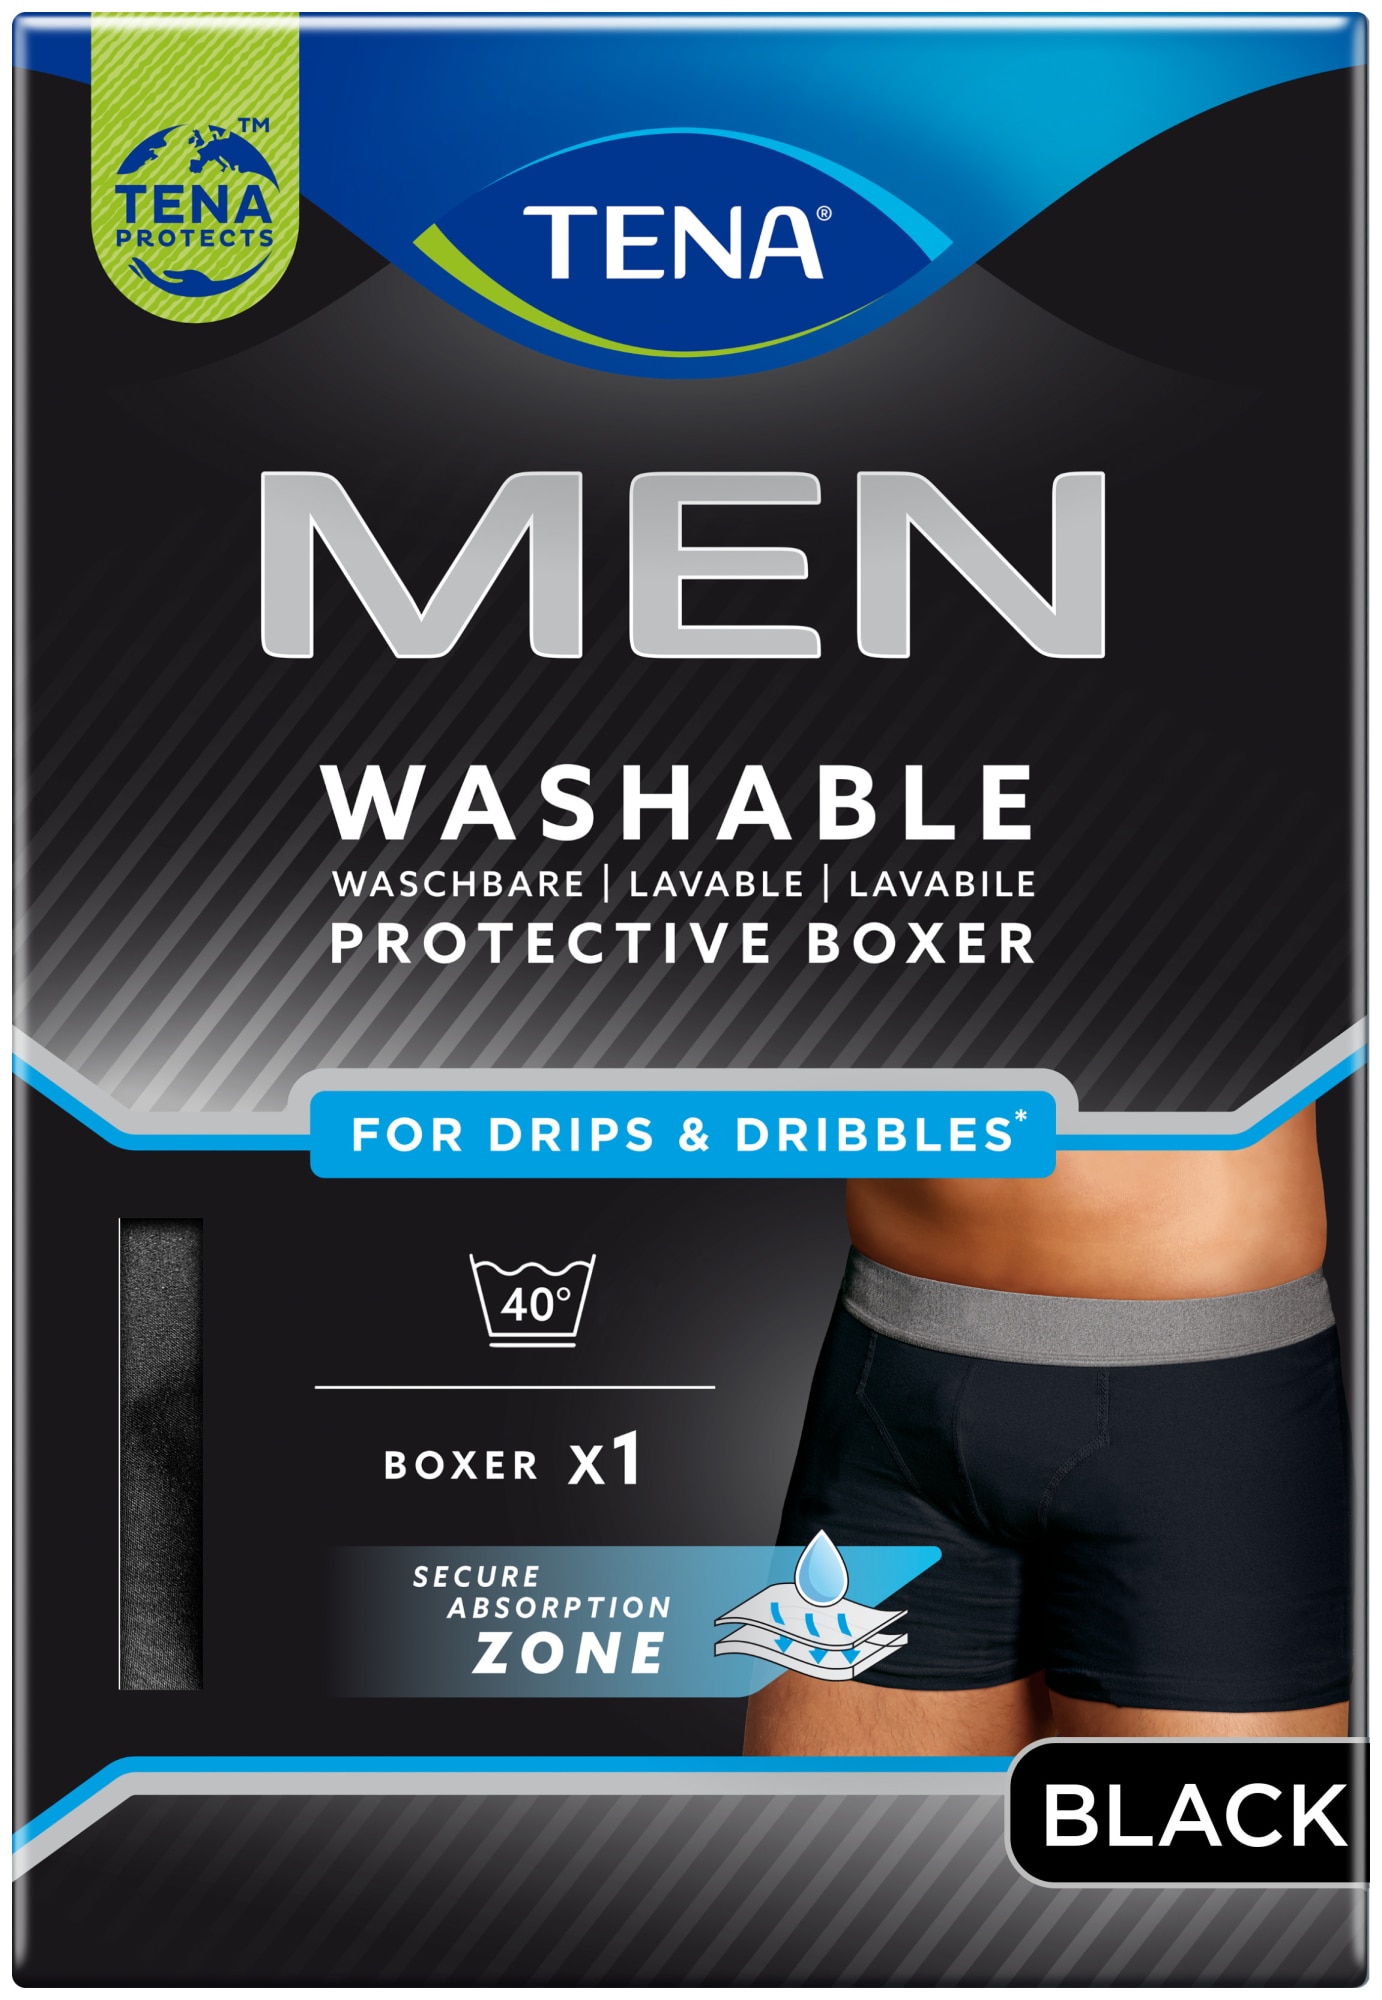 TENA Men Washable Protective Boxers